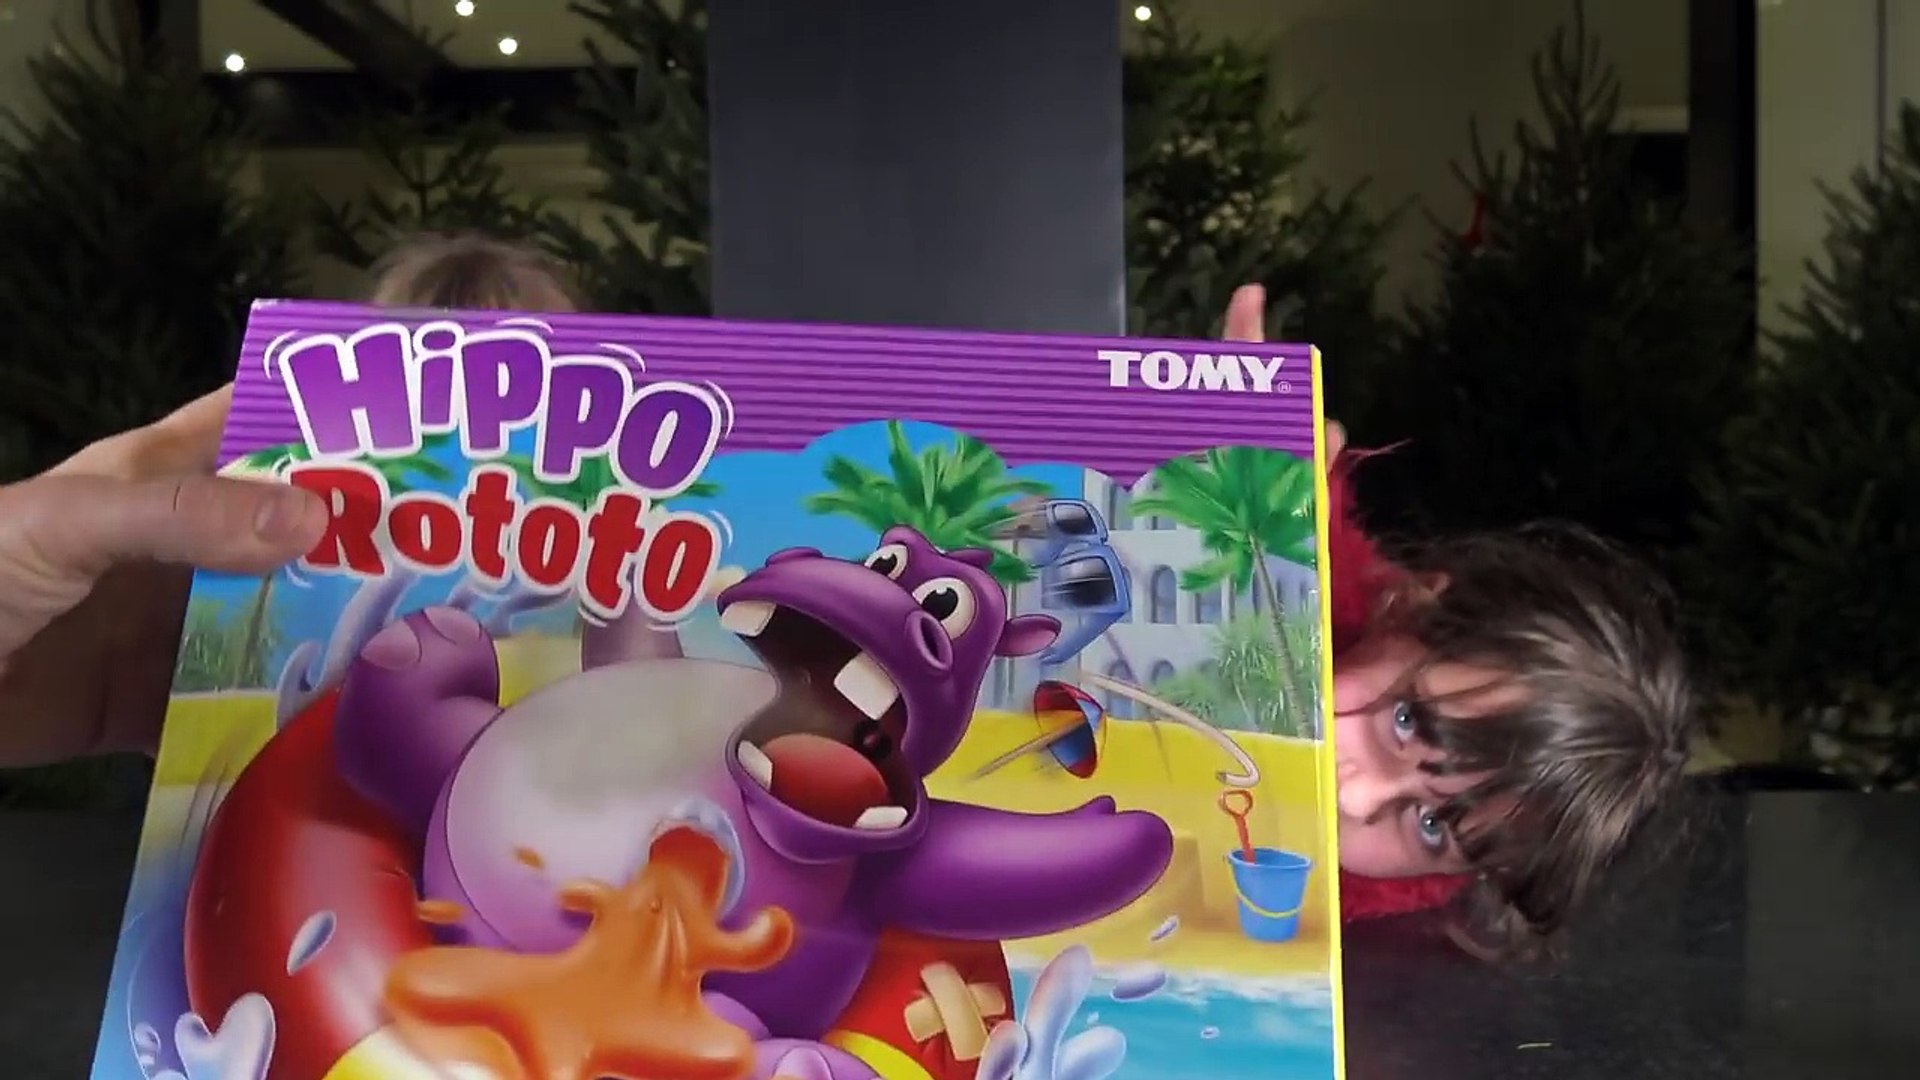 Jouer à Hippo Glouton en famille Façon géant - Vidéo Dailymotion